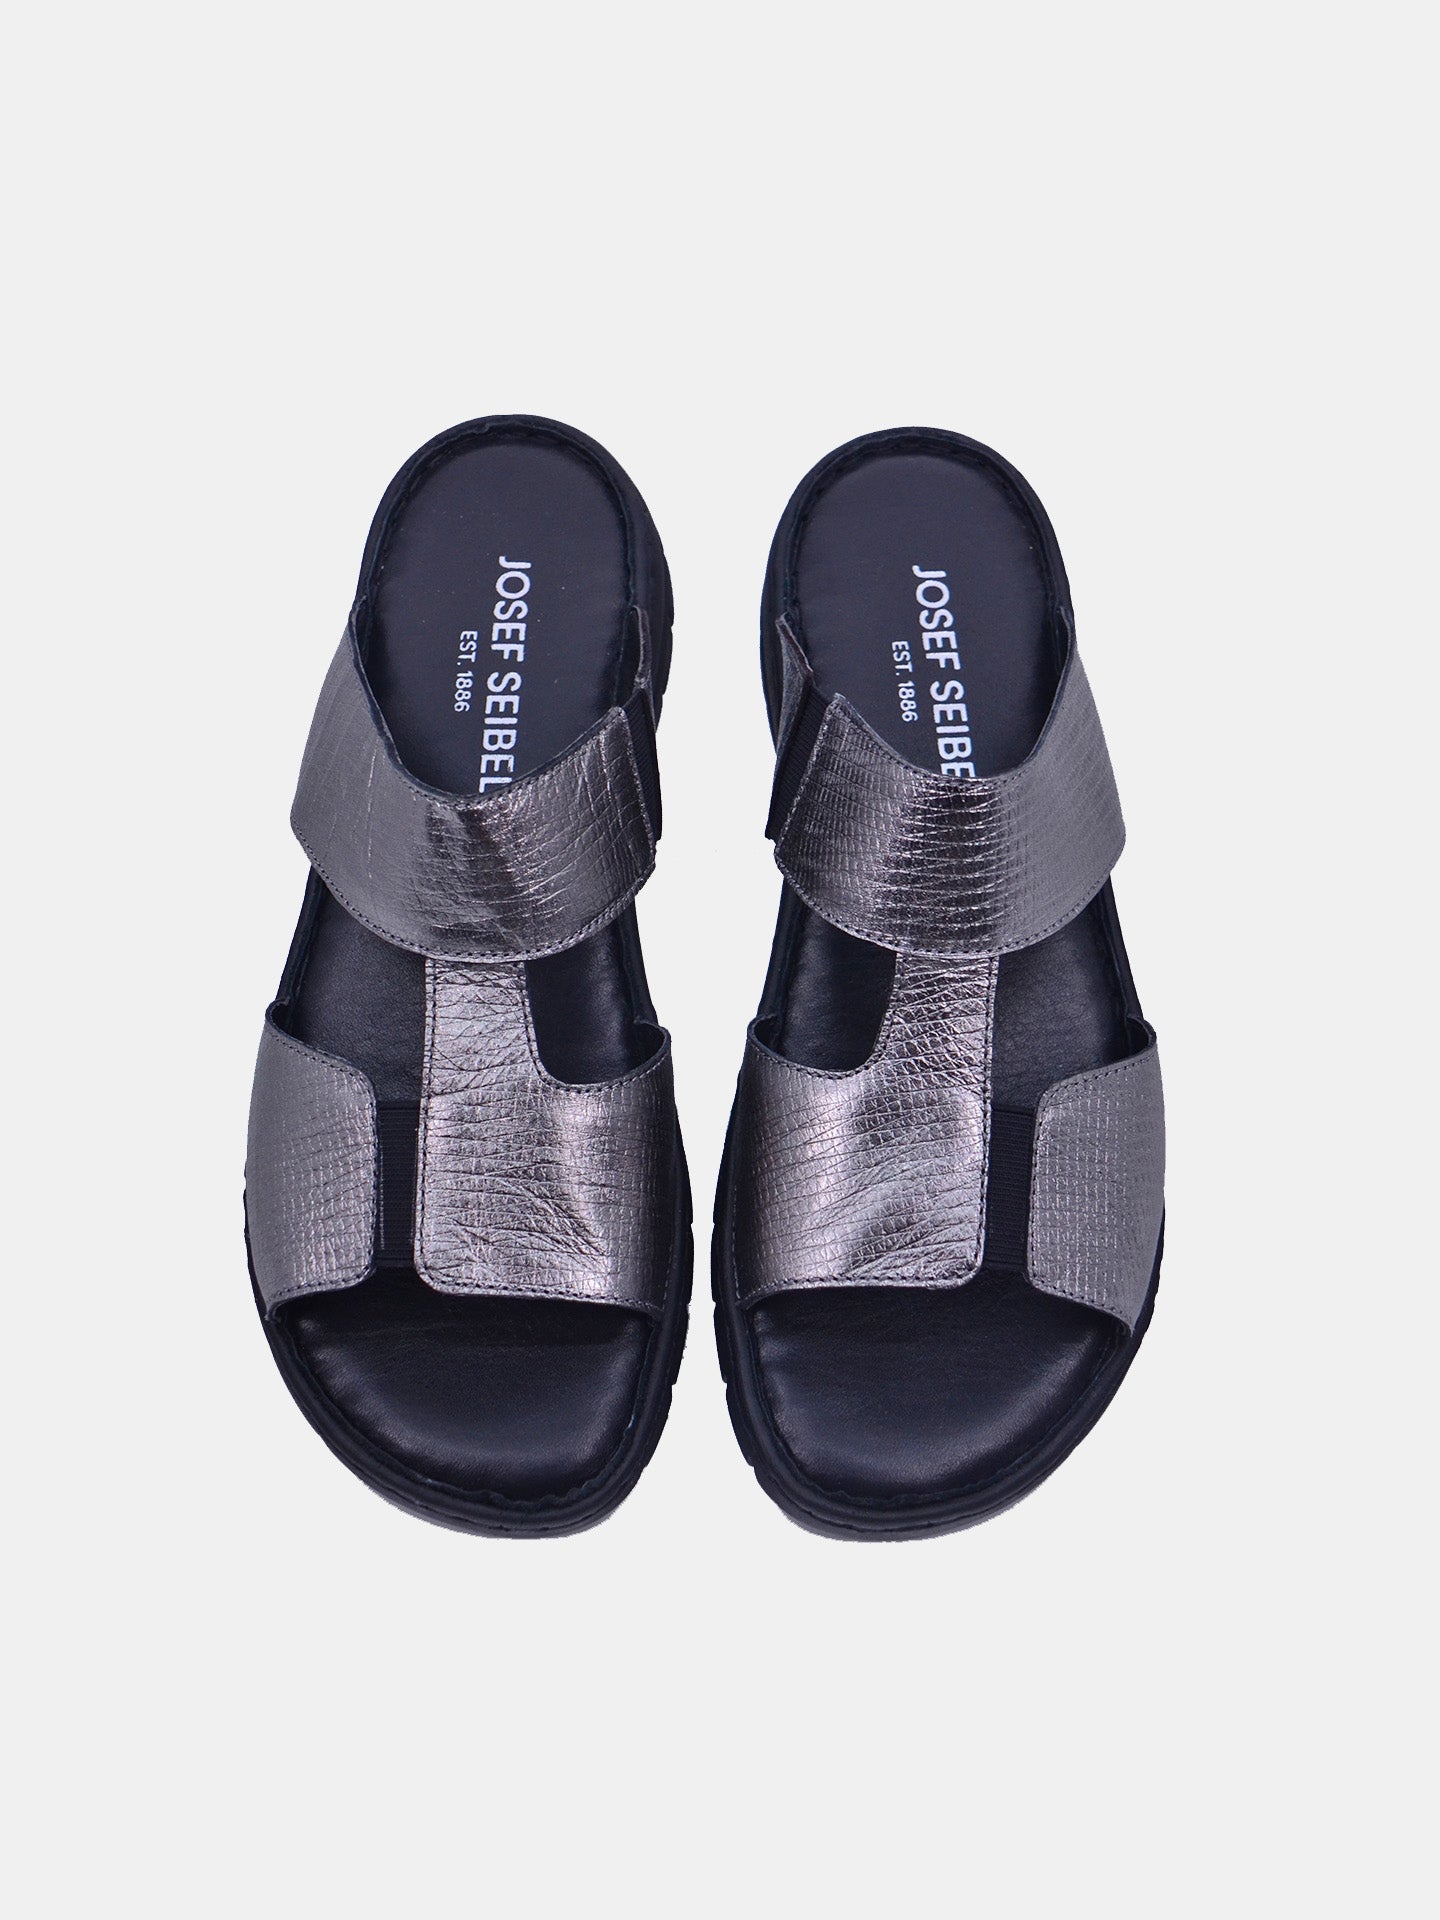 Josef Seibel 93440 Women's Flat Sandals #color_Grey